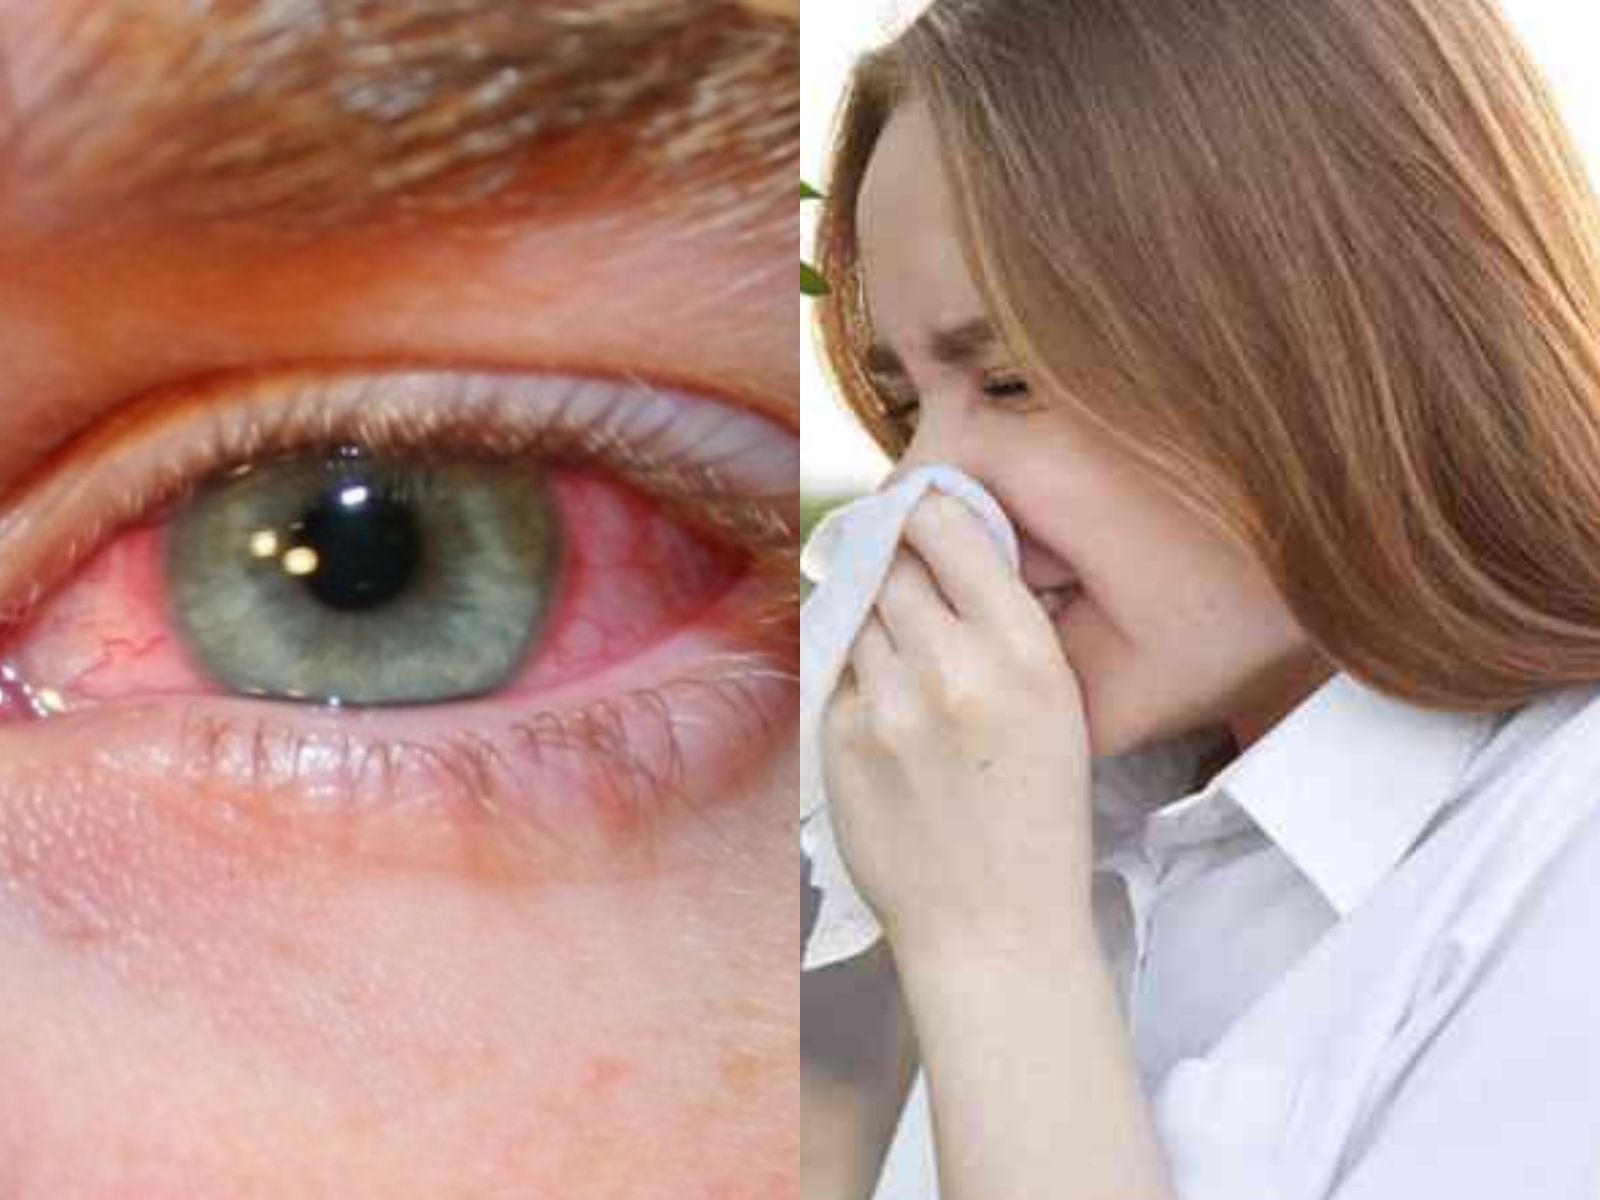 αλλεργία-στη-γύρη-συμπτώματα-αντιμετώπιση-αίτια-